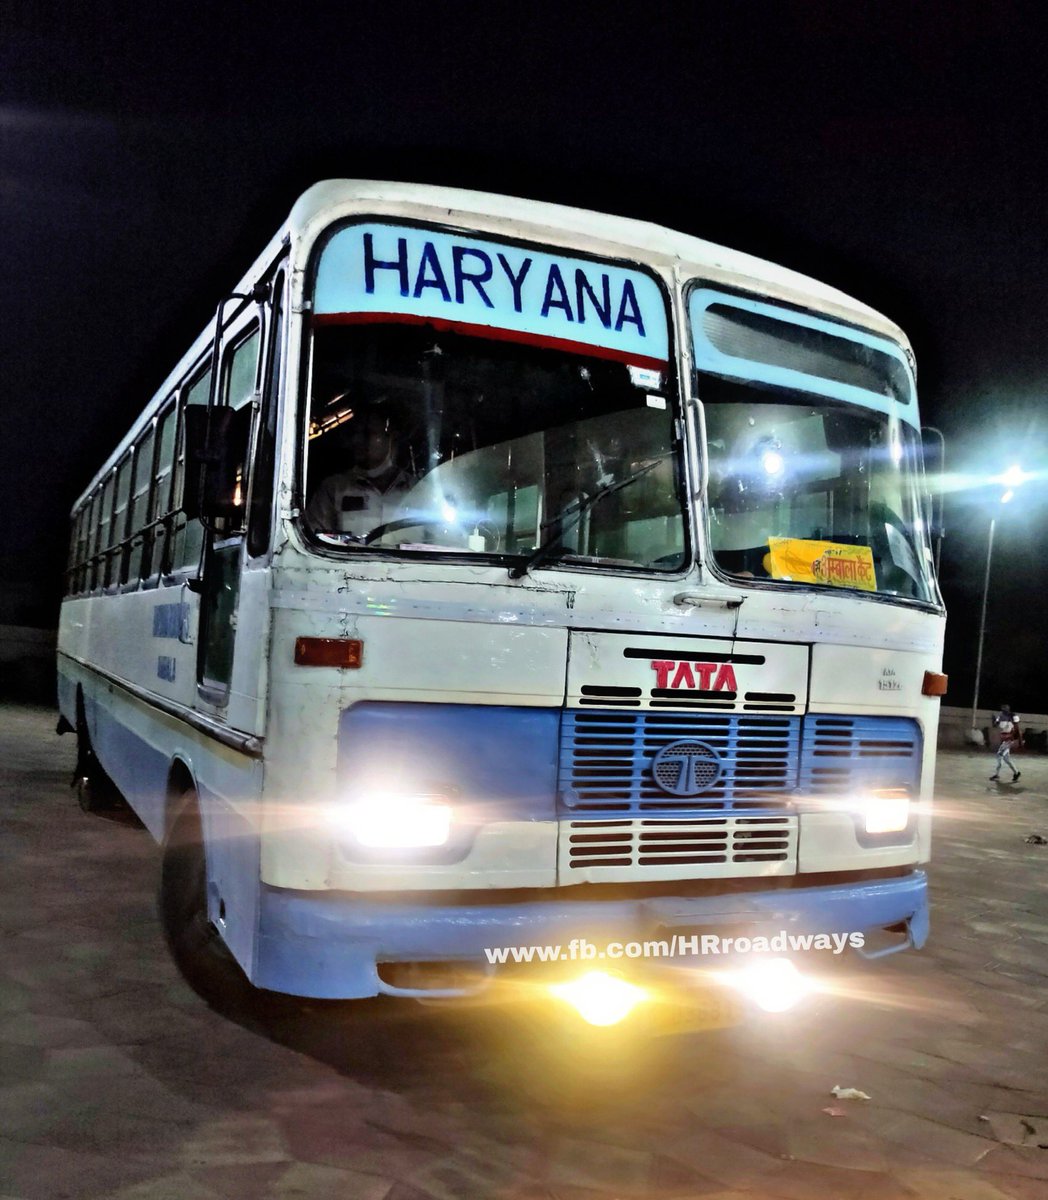 हरियाणा राज्य परिवहन अम्बाला द्वारा कल दिनांक 30 अप्रैल 22 से खाटूश्यामजी के लिए सीधी बस सेवा शुरू की जा रही है। वाया- हिसार,राजगढ़,चूरू,रींगस अम्बाला 07:00 सुबह खाटूश्याम जी 07:00 सुबह अम्बाला से खाटूश्याम जी - 530₹ हिसार से खाटूश्याम जी - 305₹ @HRroadways @moolchandbjphry